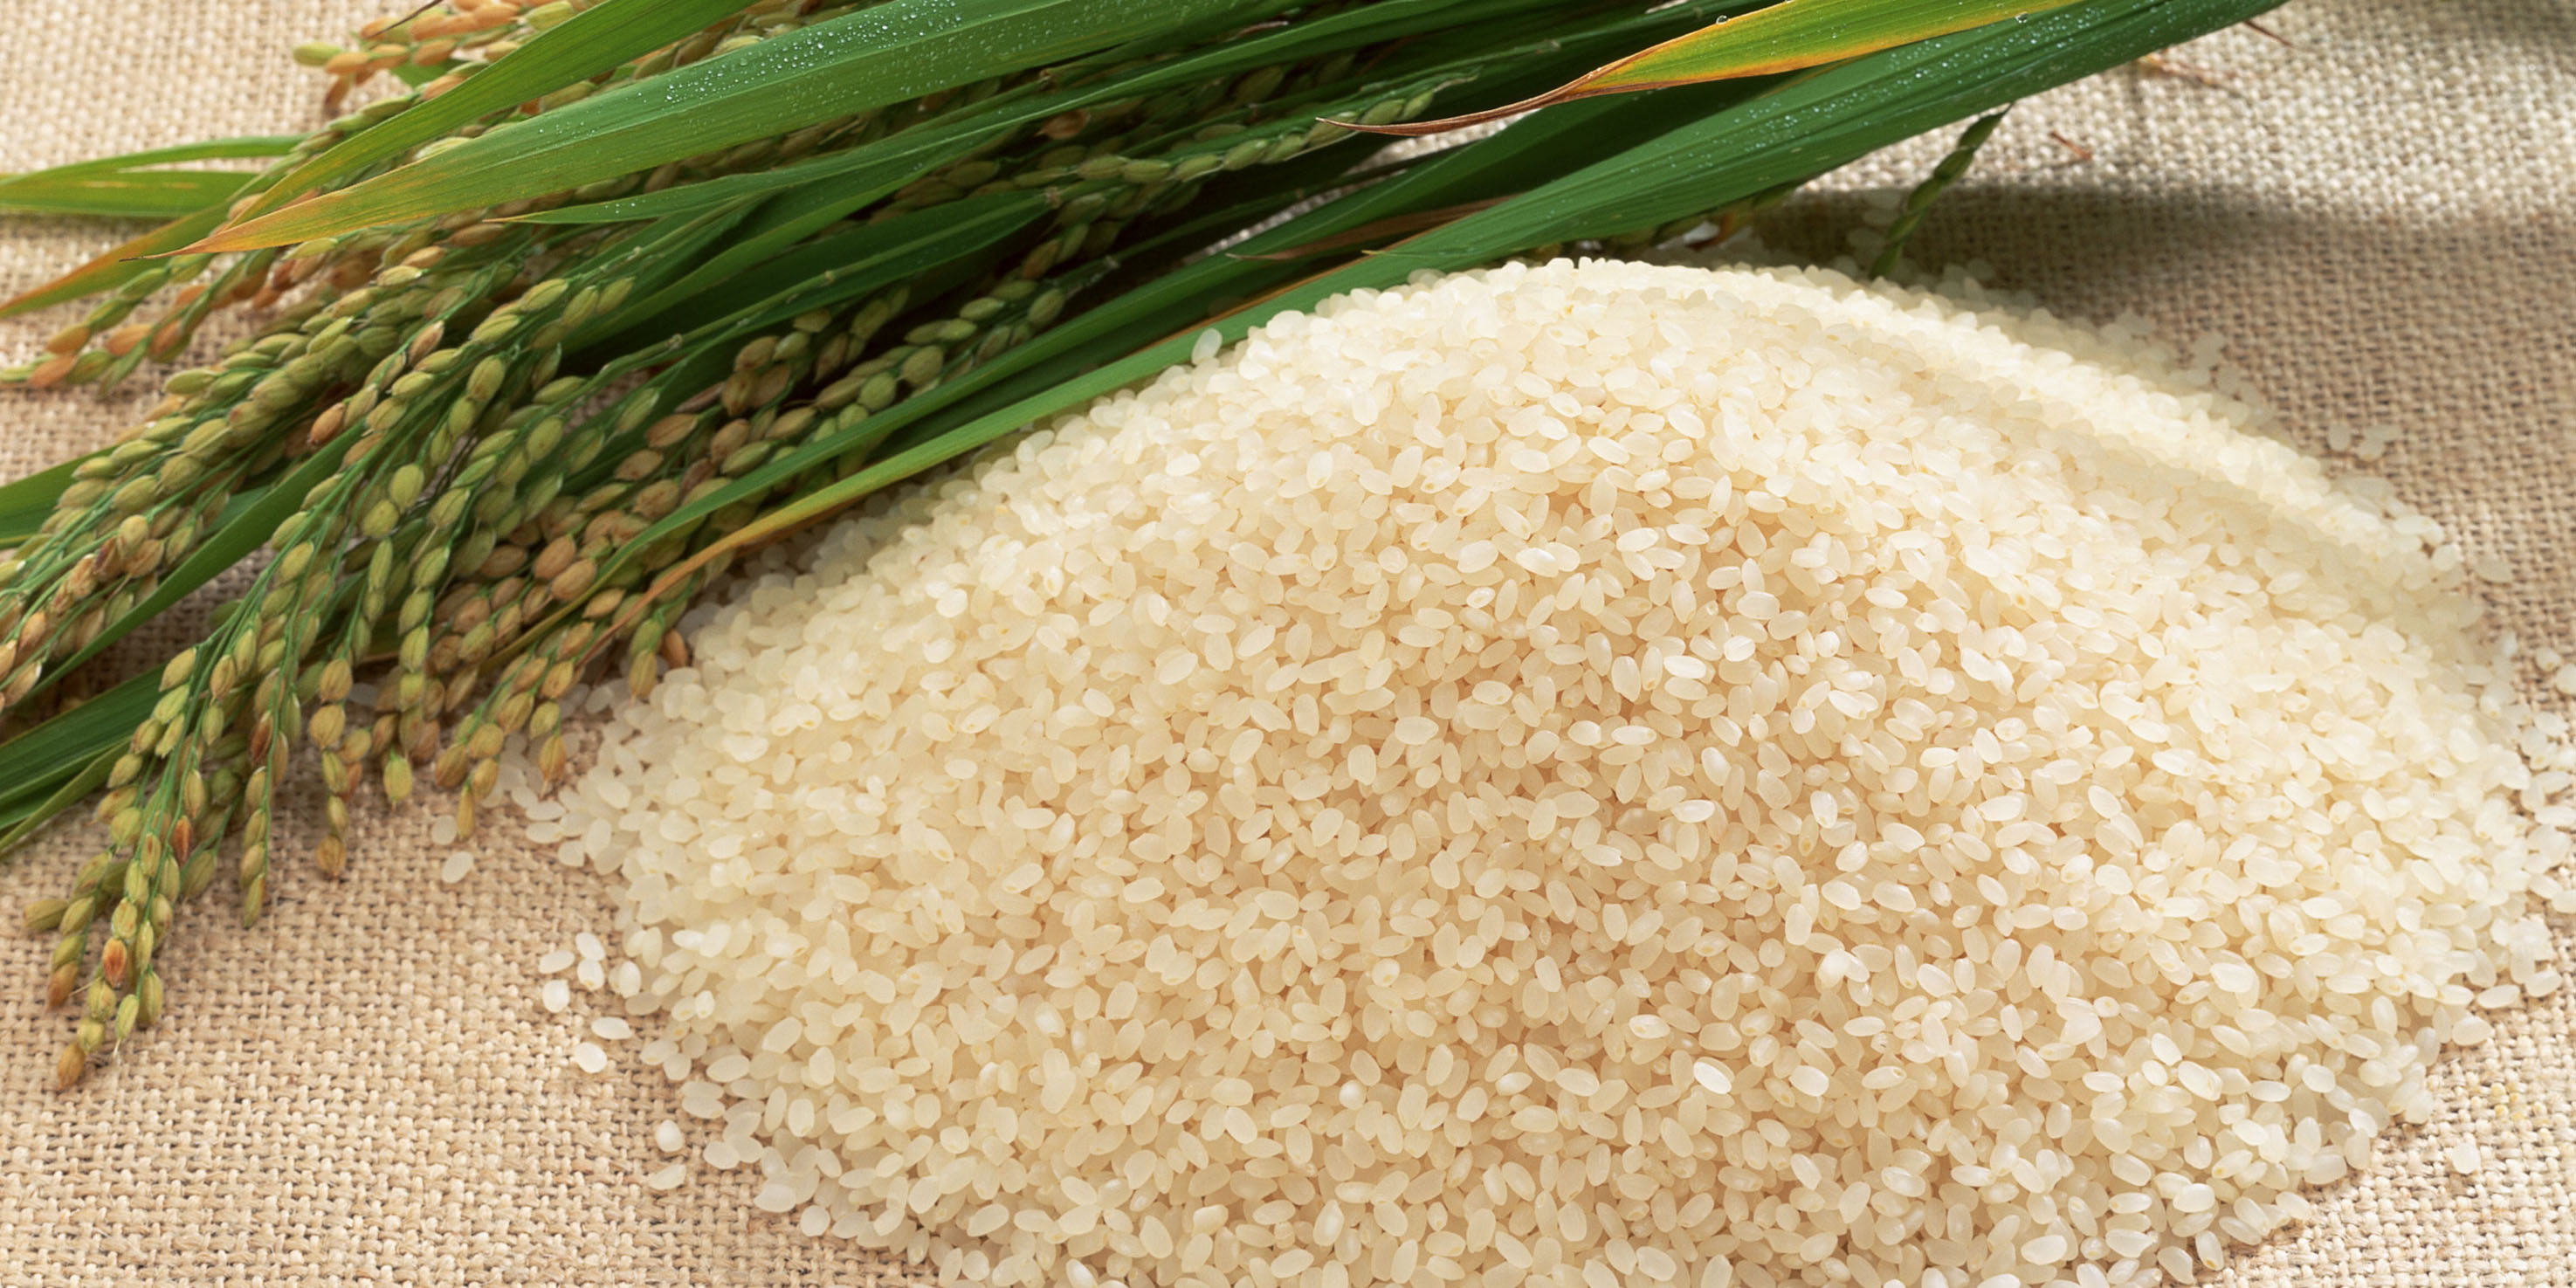 شناسایی و کشف ۲۳ تن برنج قاچاق در اراک